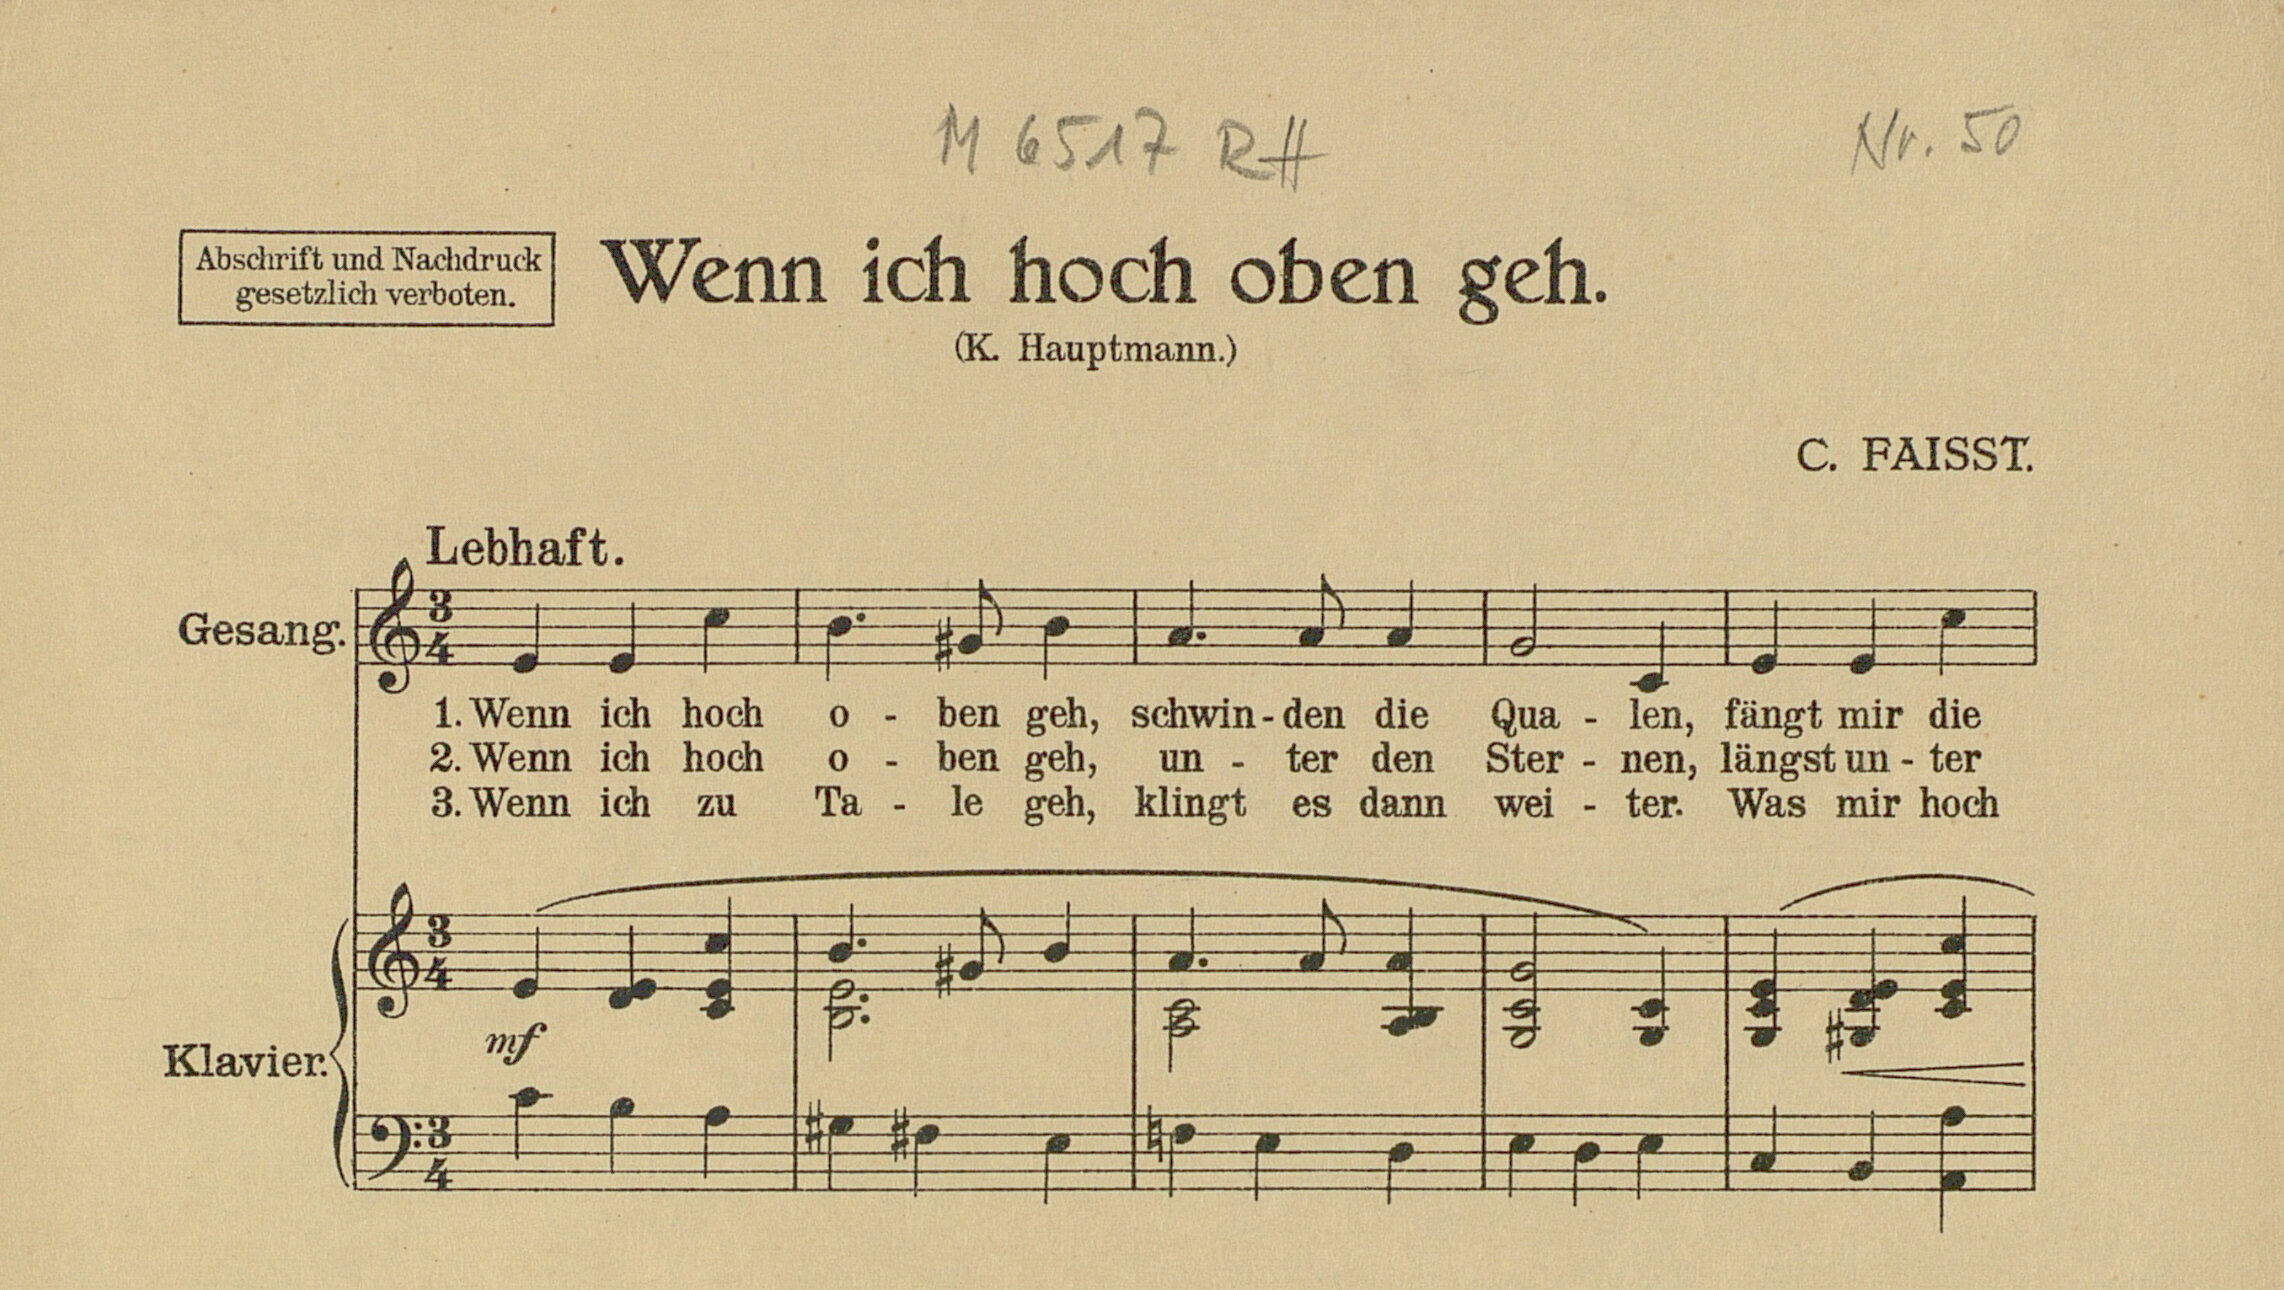 Clara Faisst: Wenn ich hoch oben geh. Für eine Singstimme und Klavier. Text: K. Hauptmann. Karlsruhe: Selbstverlag, circa 1915. Badische Landesbibliothek, Signatur M 6517 RH